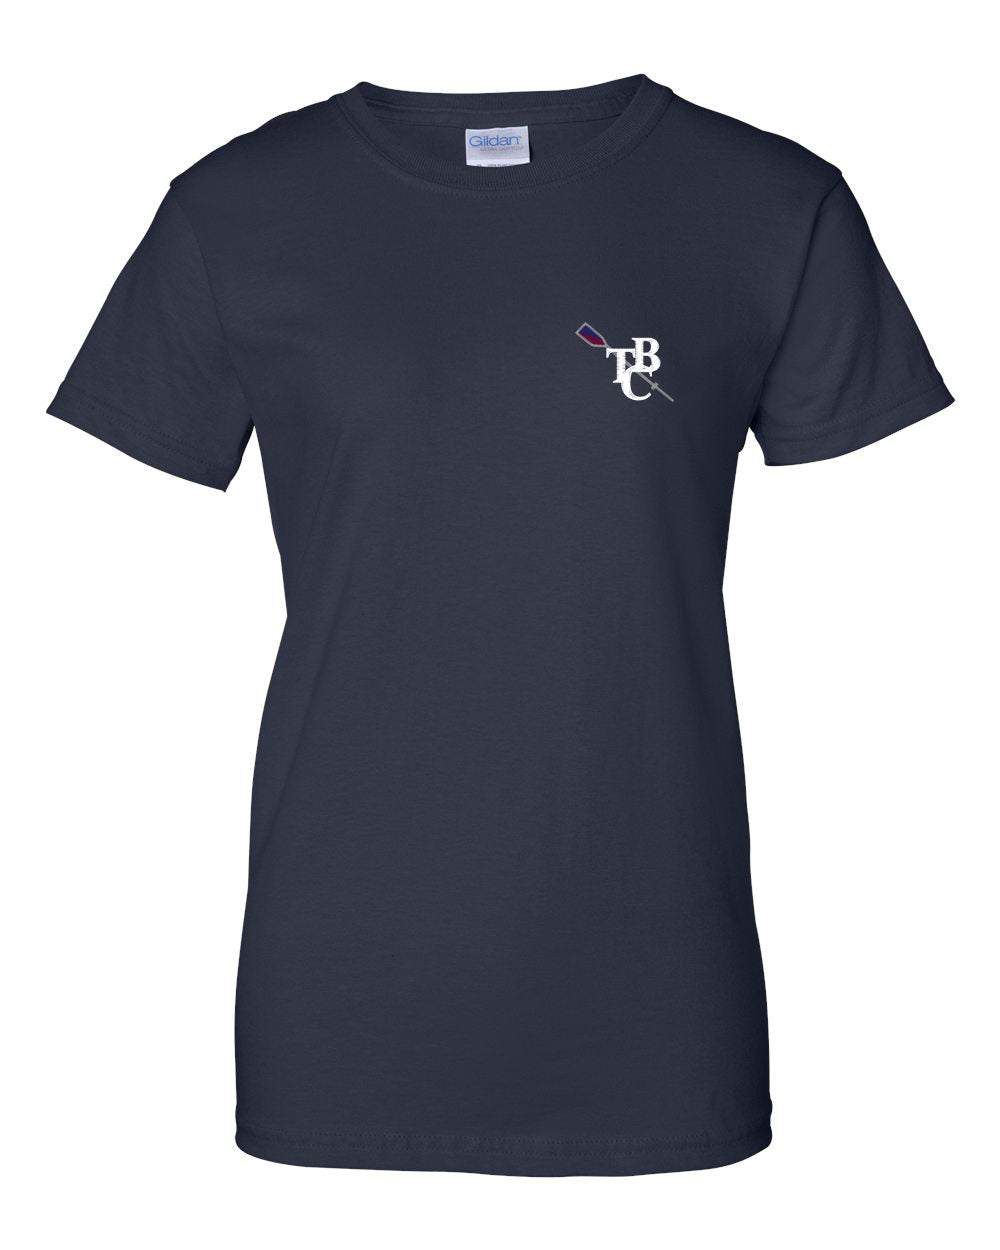 100% Cotton TBC Women's Team Spirit T-Shirt